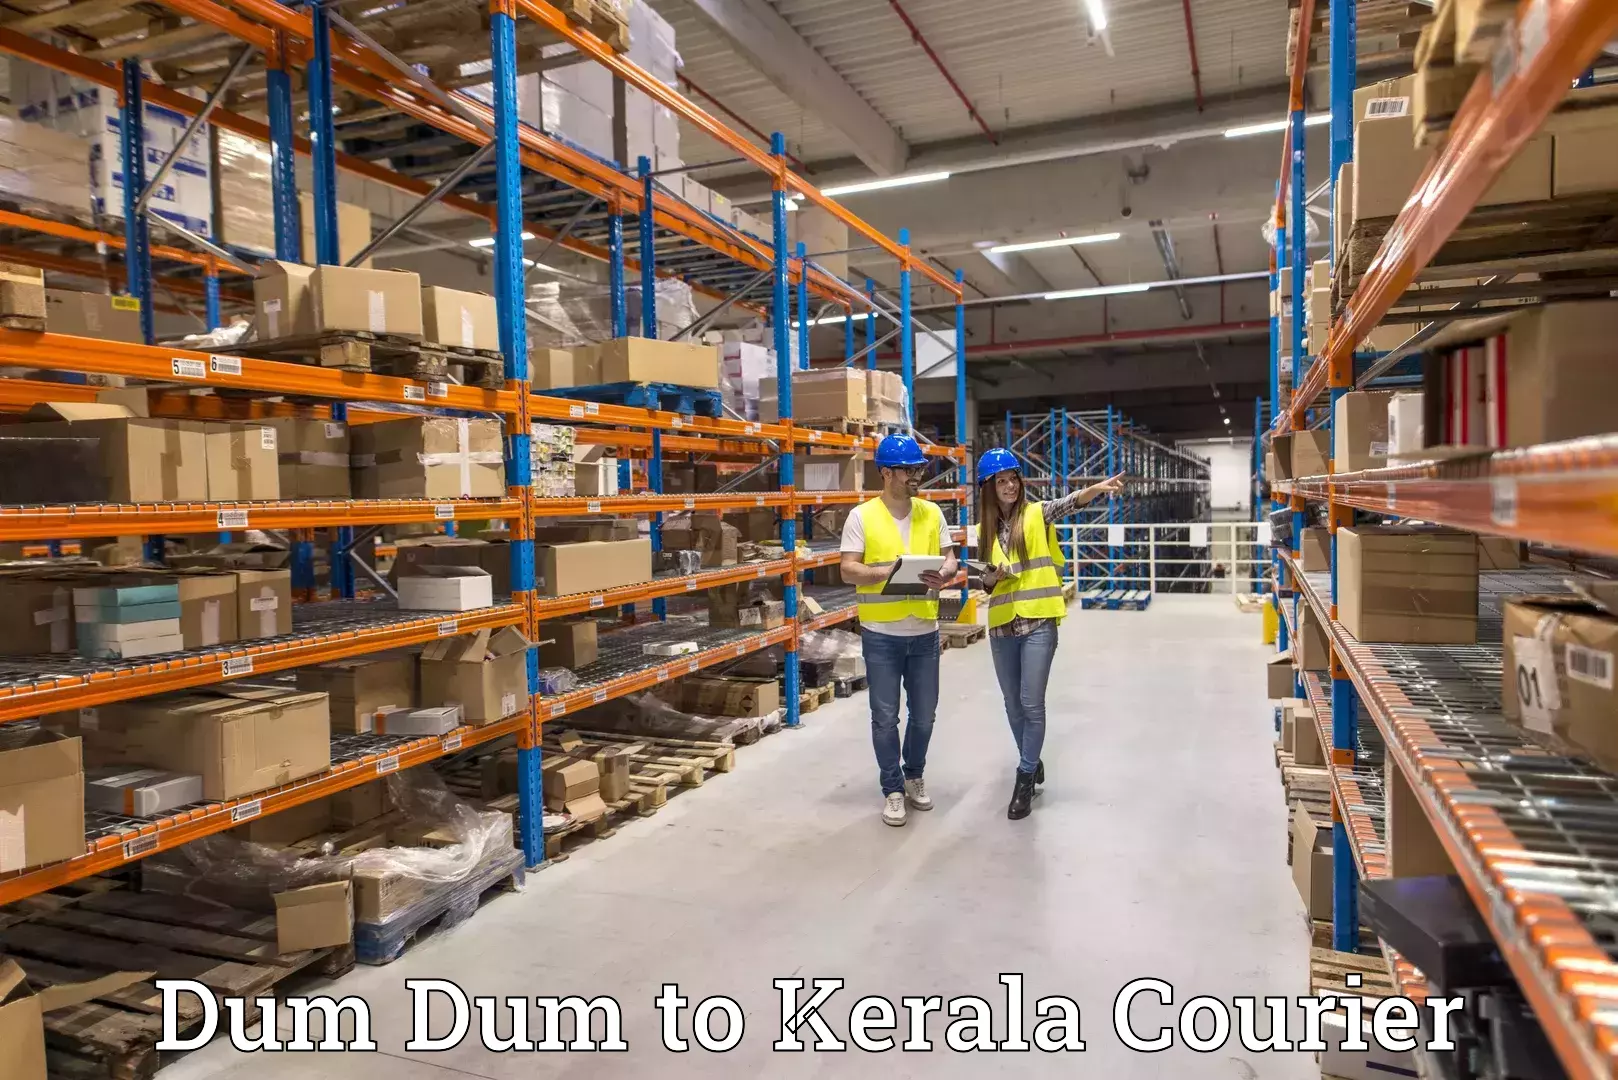 Efficient parcel service Dum Dum to Cochin Port Kochi